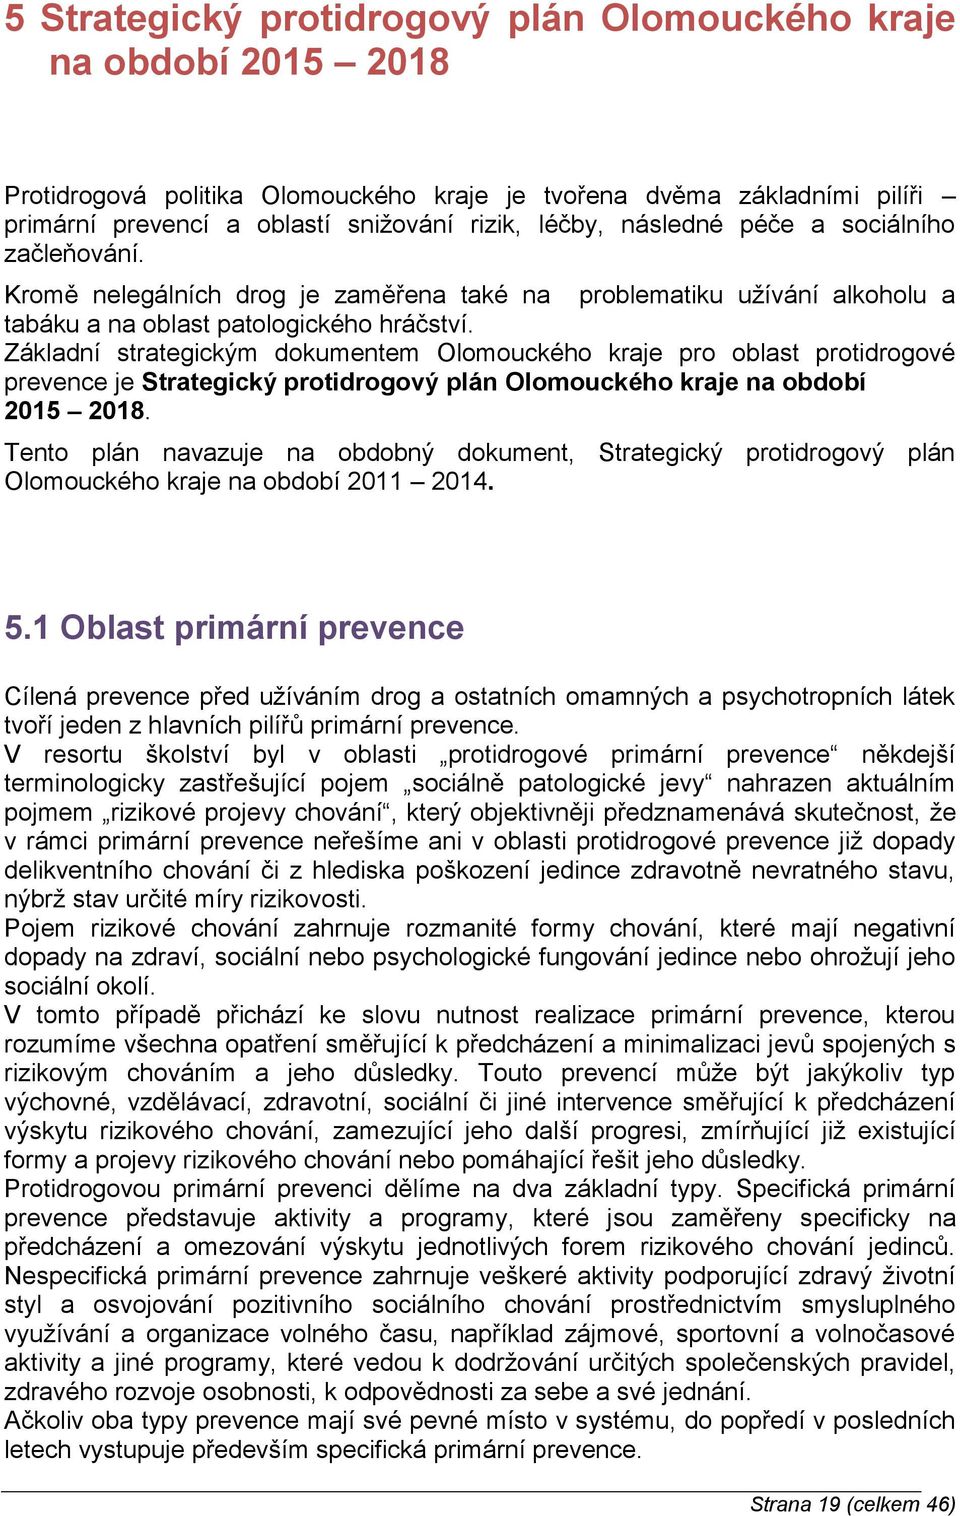 Základní strategickým dokumentem Olomouckého kraje pro oblast protidrogové prevence je Strategický protidrogový plán Olomouckého kraje na období 2015 2018.